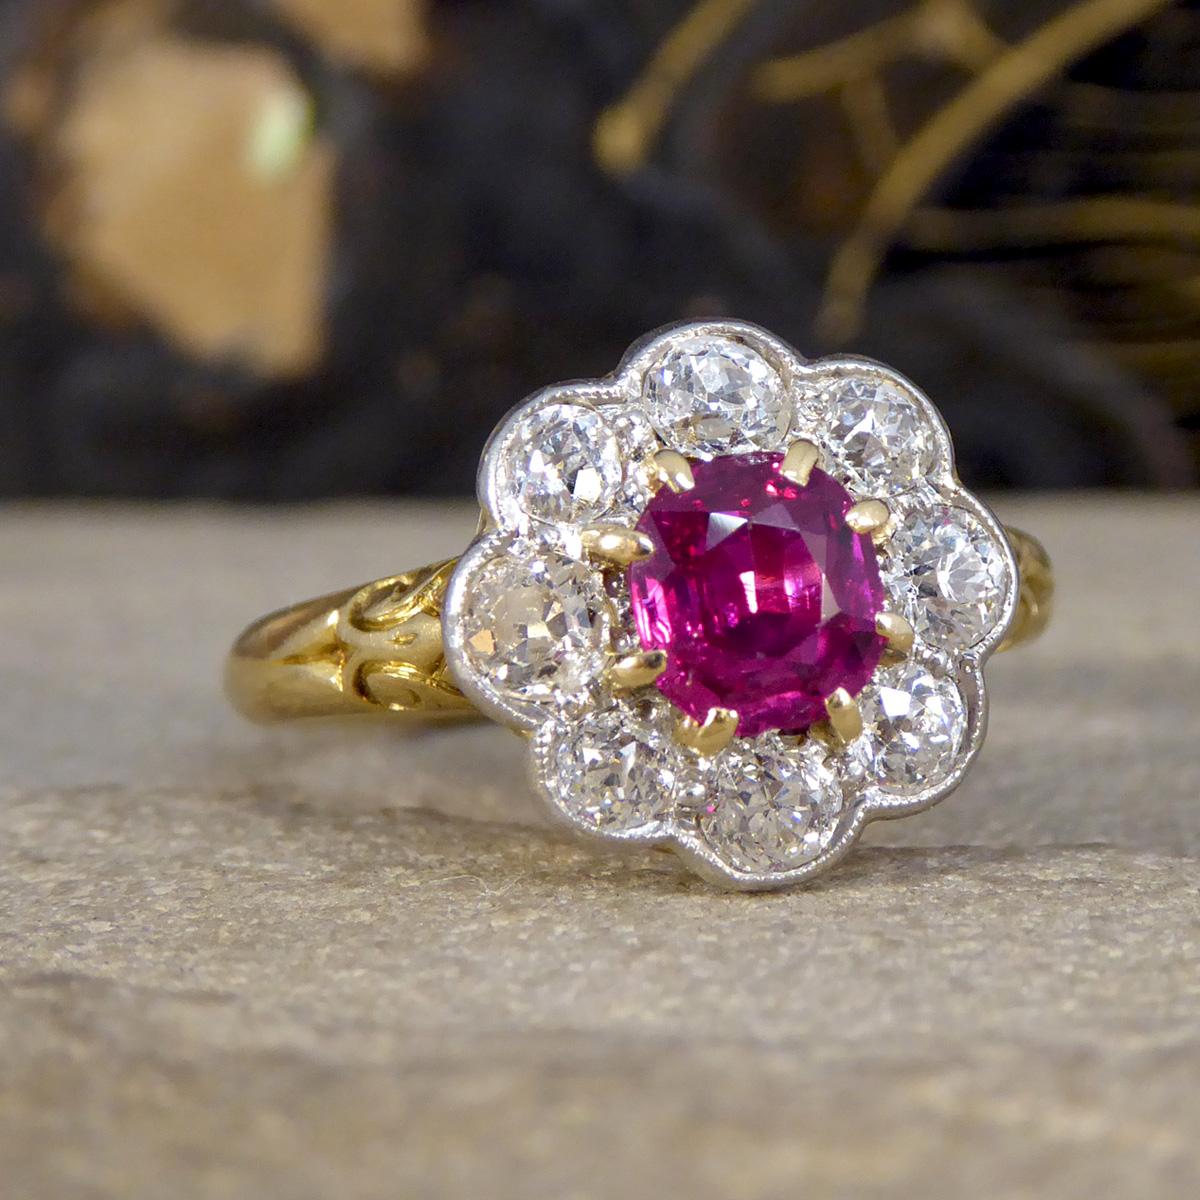 Dieser wunderschöne spätviktorianische, nicht erhitzte Rubin- und Diamant-Cluster-Ring ist ein bemerkenswertes Stück Geschichte, das wunderschön in 18-karätigem Gelbgold gefertigt wurde. Sein Herzstück ist ein atemberaubender und seltener, nicht